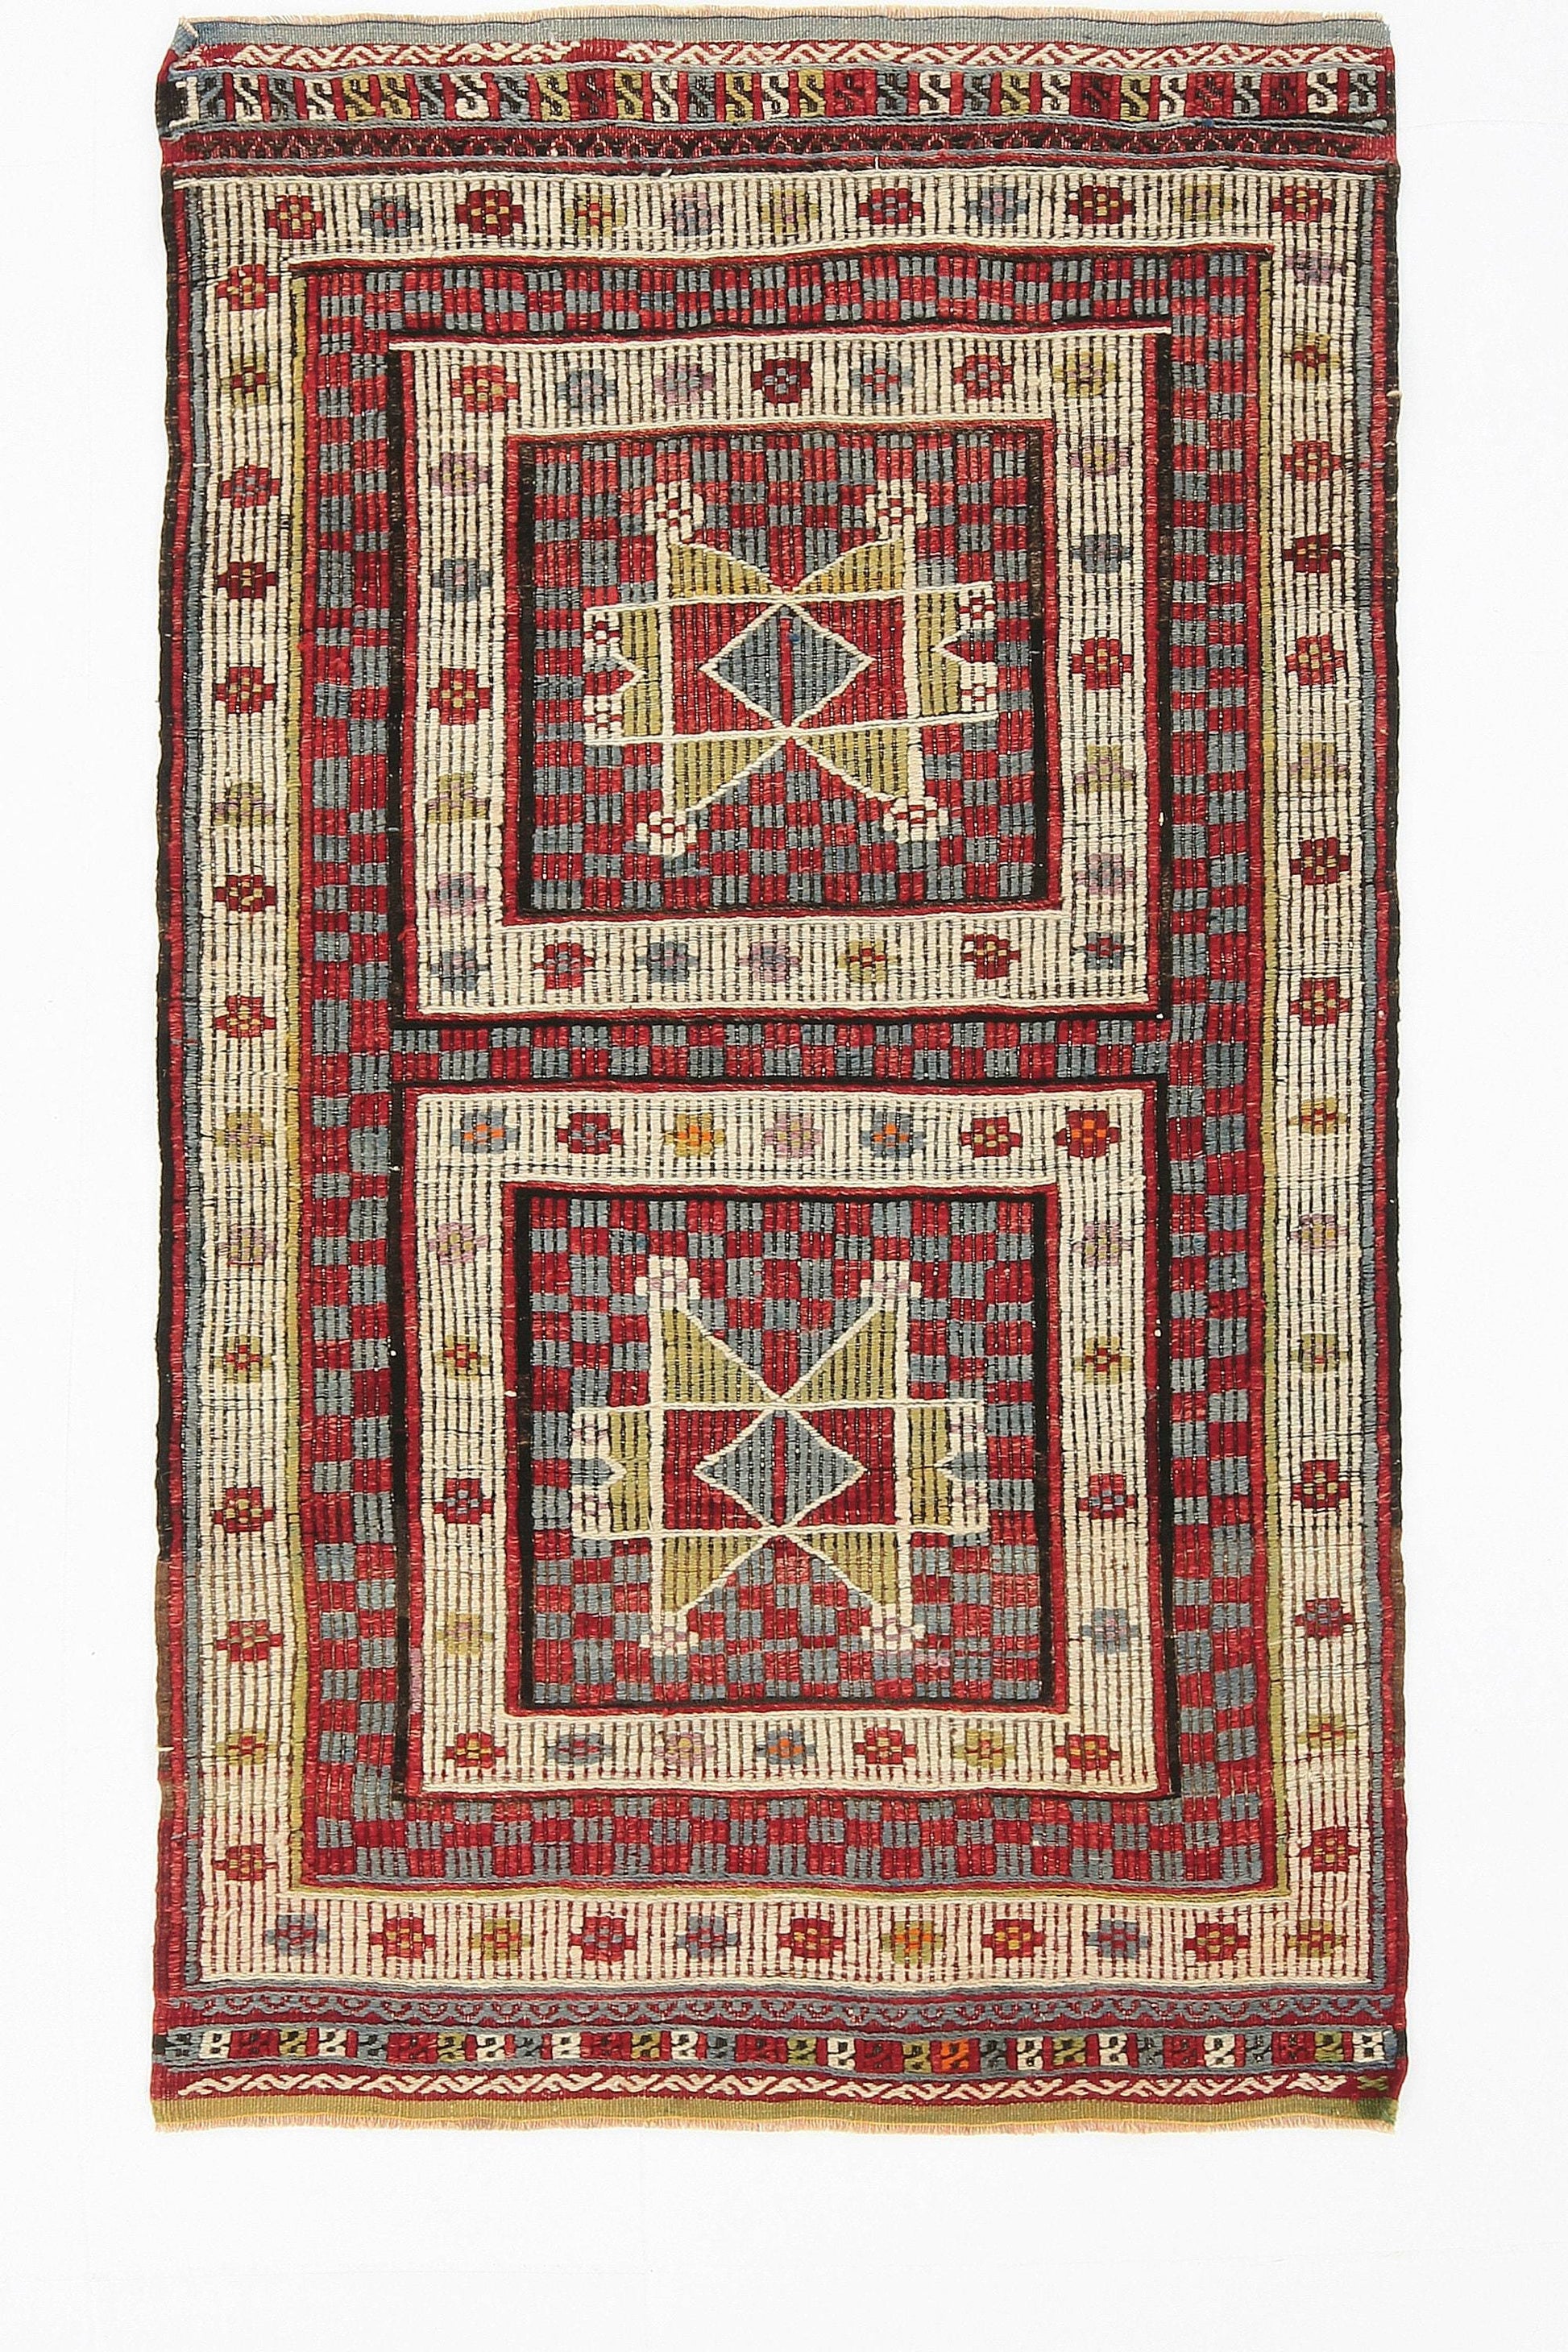 3' x 5' Multi Color Turkish Kilim Old Rug  |  RugReform